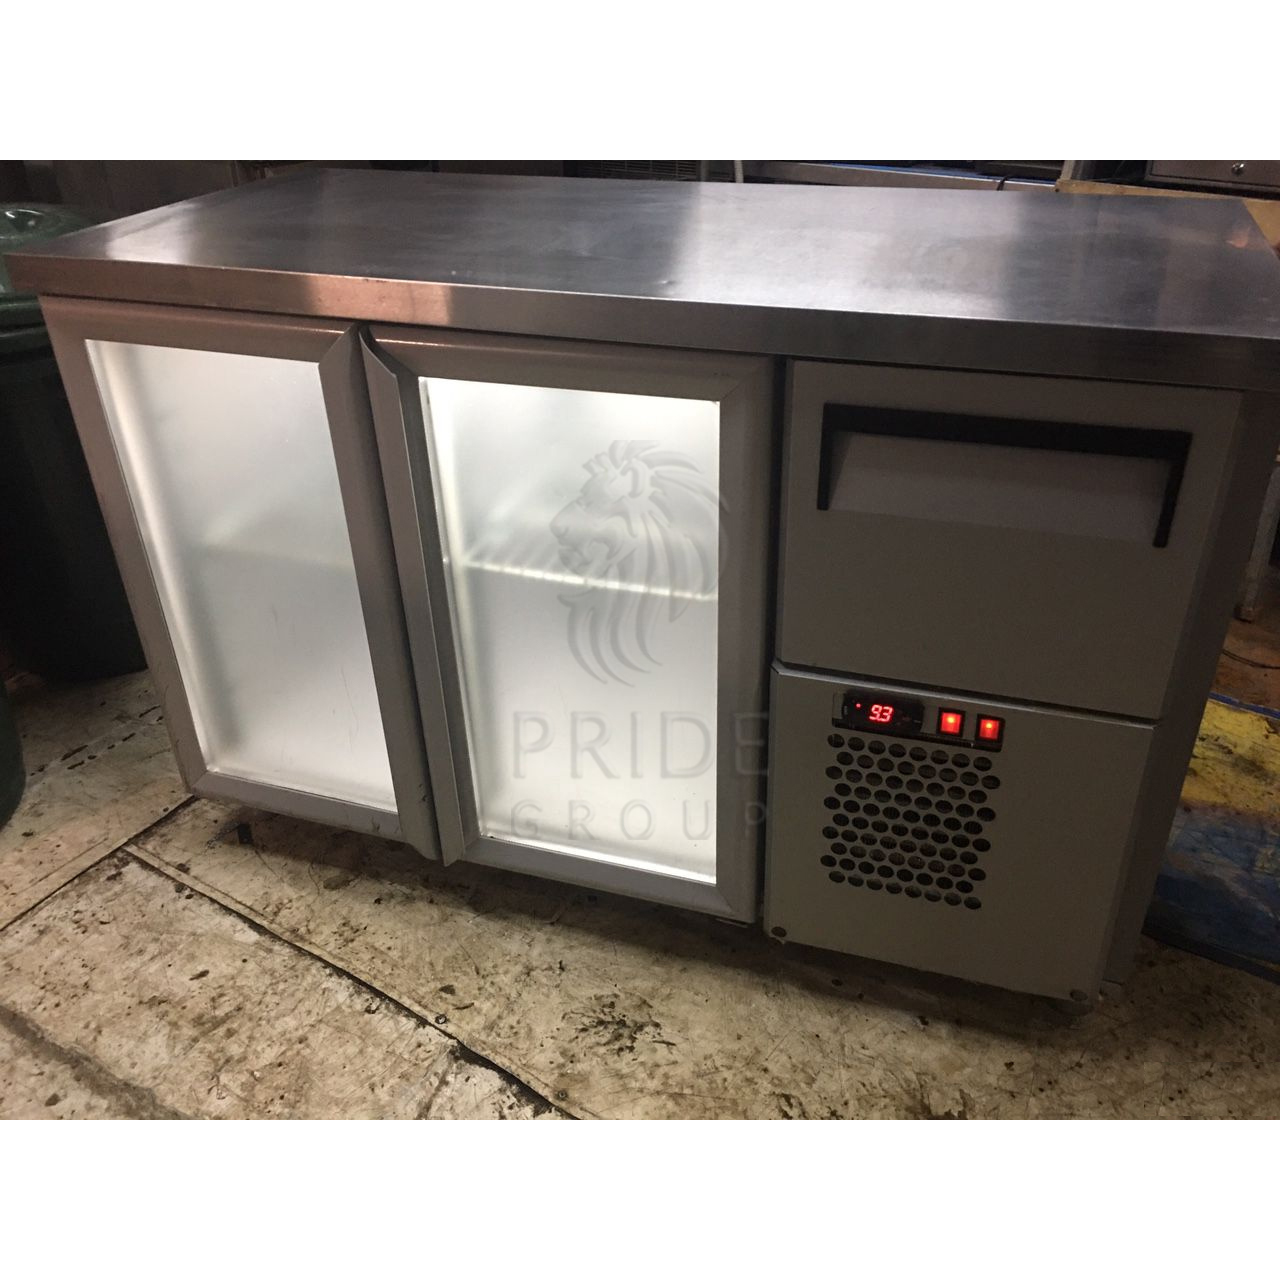 картинка Холодильный барный стол T57 M2-1-G 0430-19 (BAR-250С Carboma)